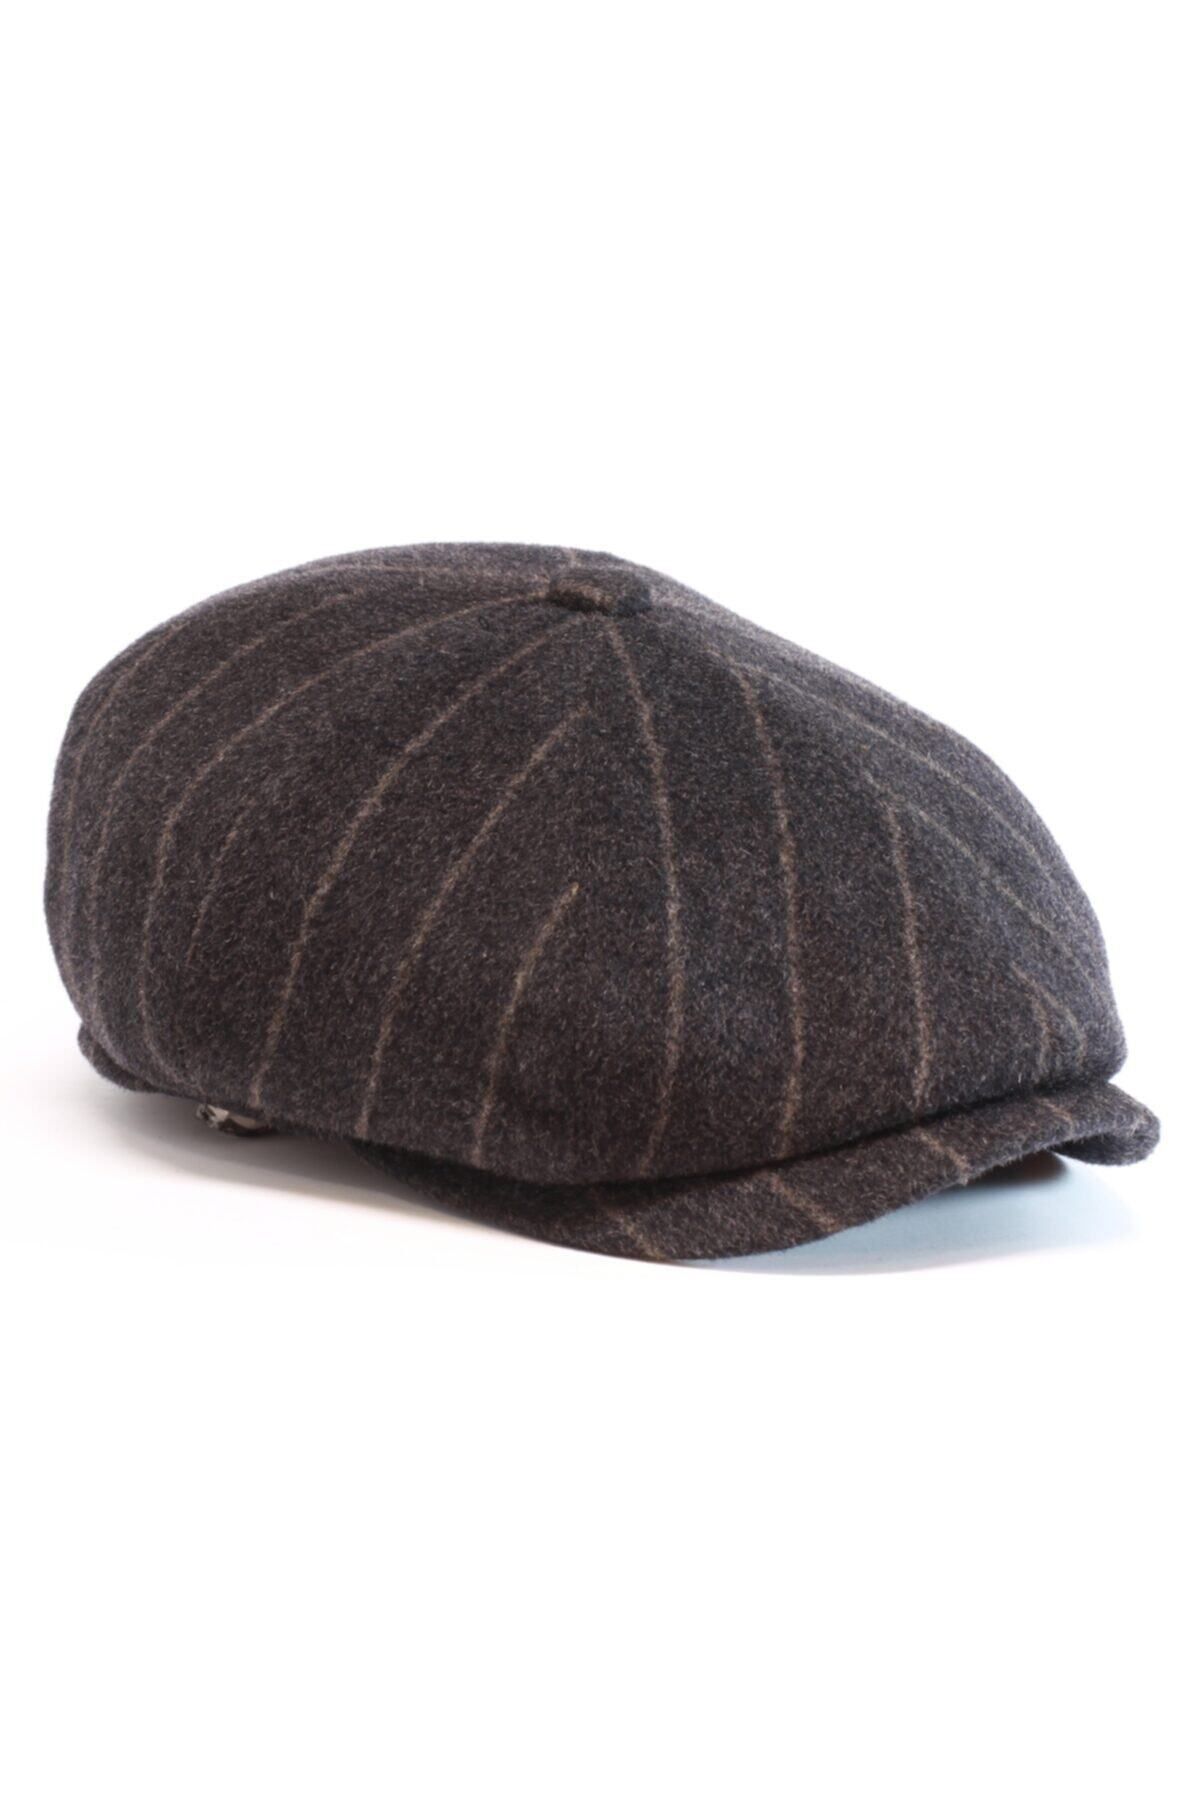 Armalı Şapka Erkek Kahverengi Kaşmir İngiliz Model Kasket Şapka